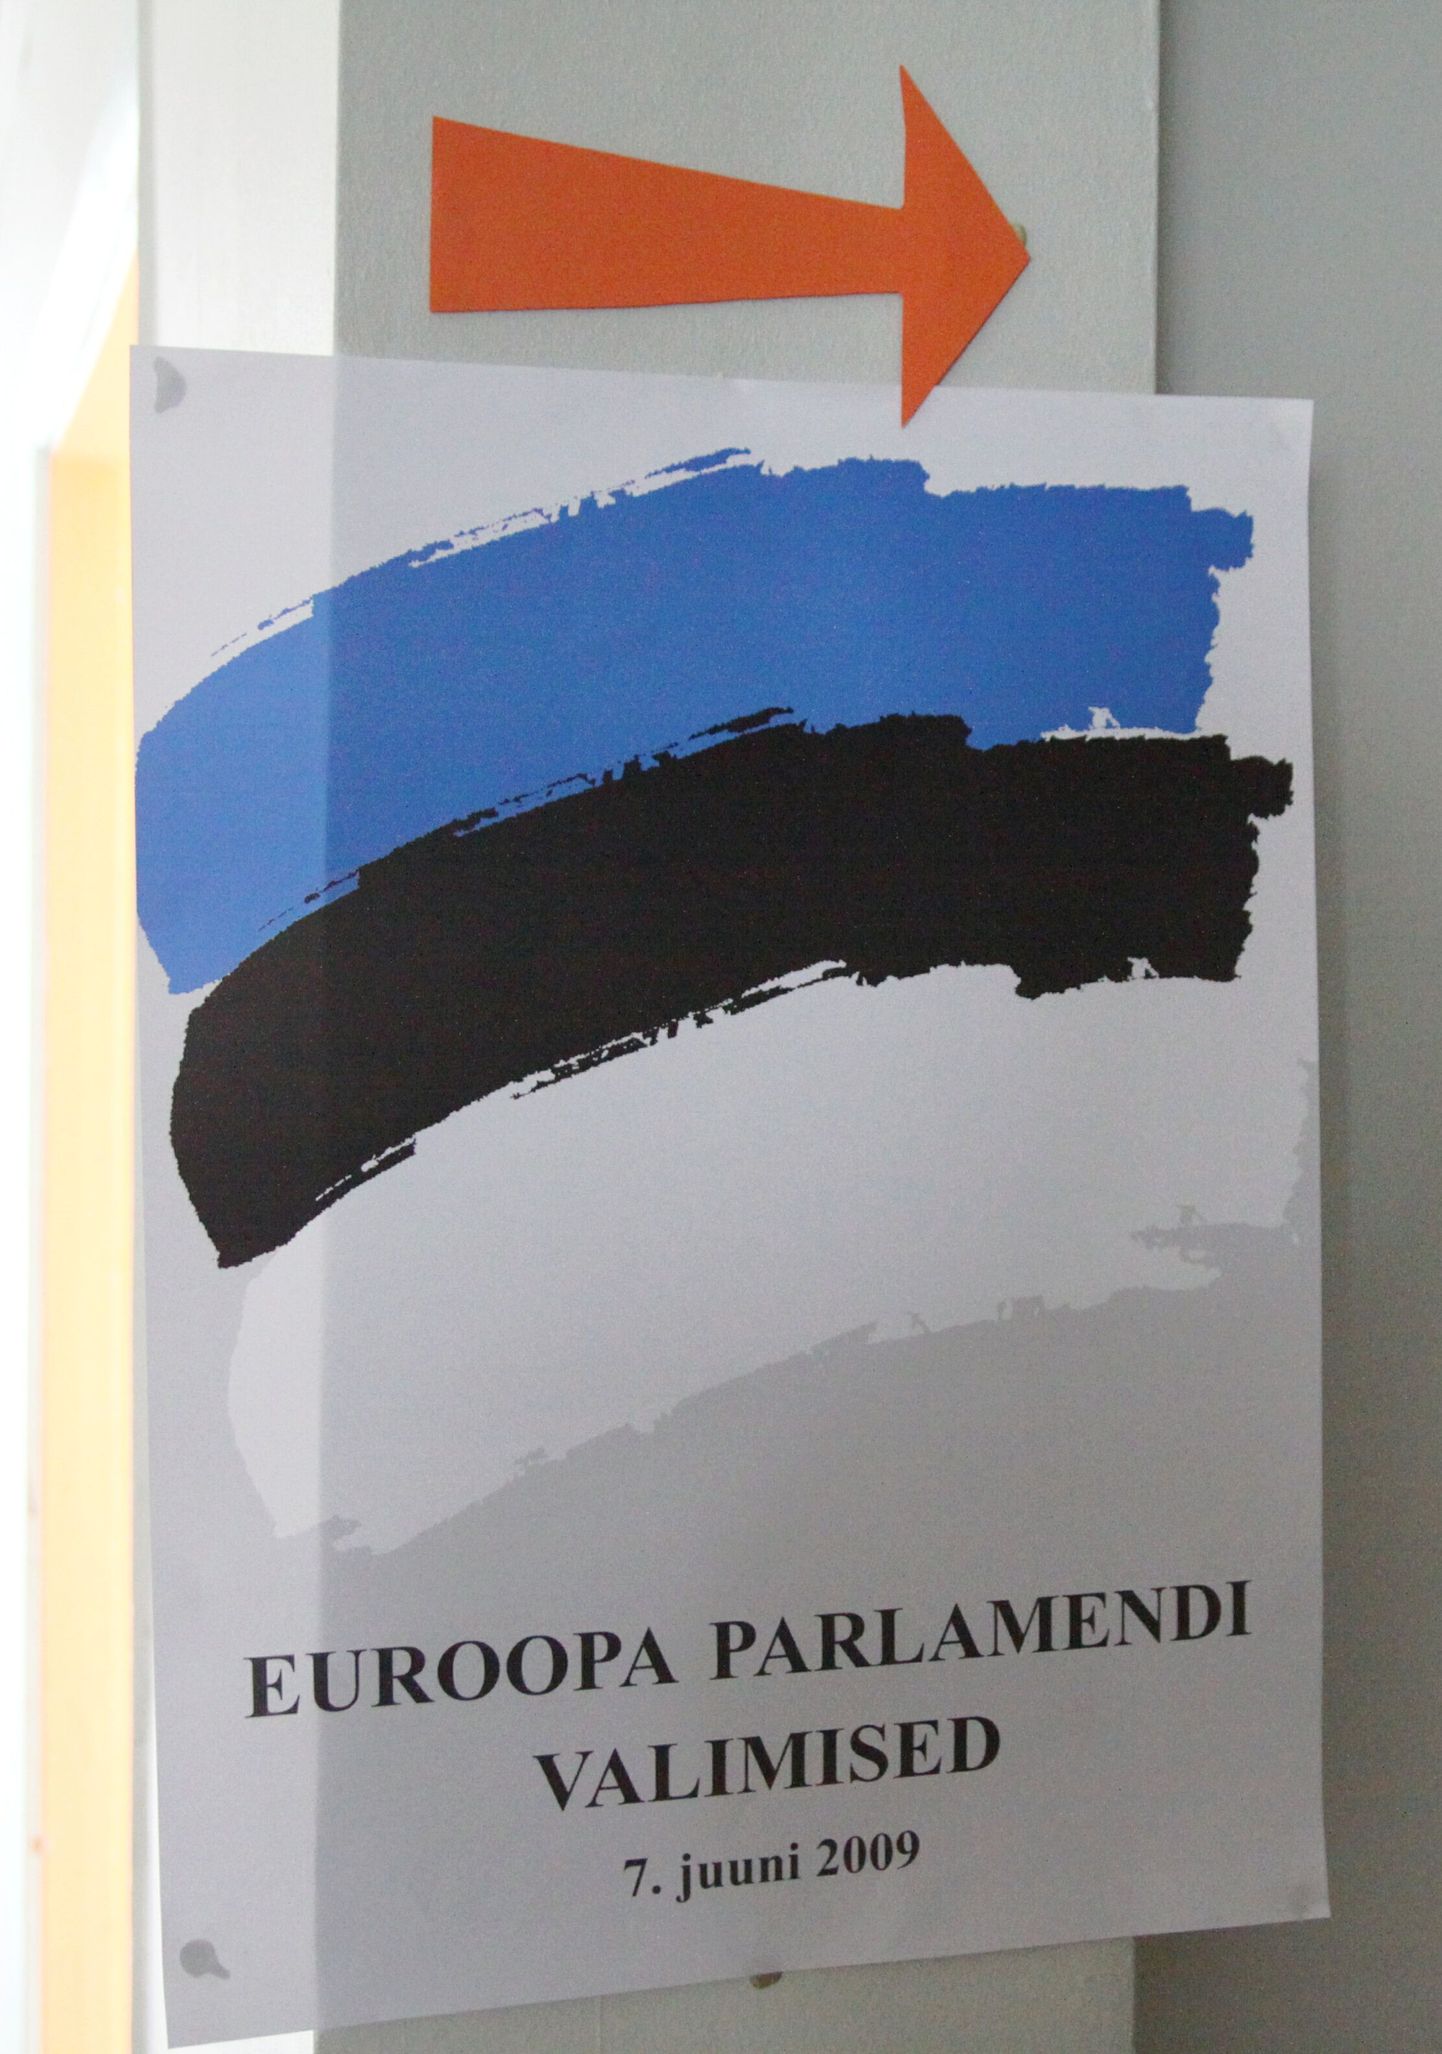 Europarlamendi valimised 7. juunil 2009.